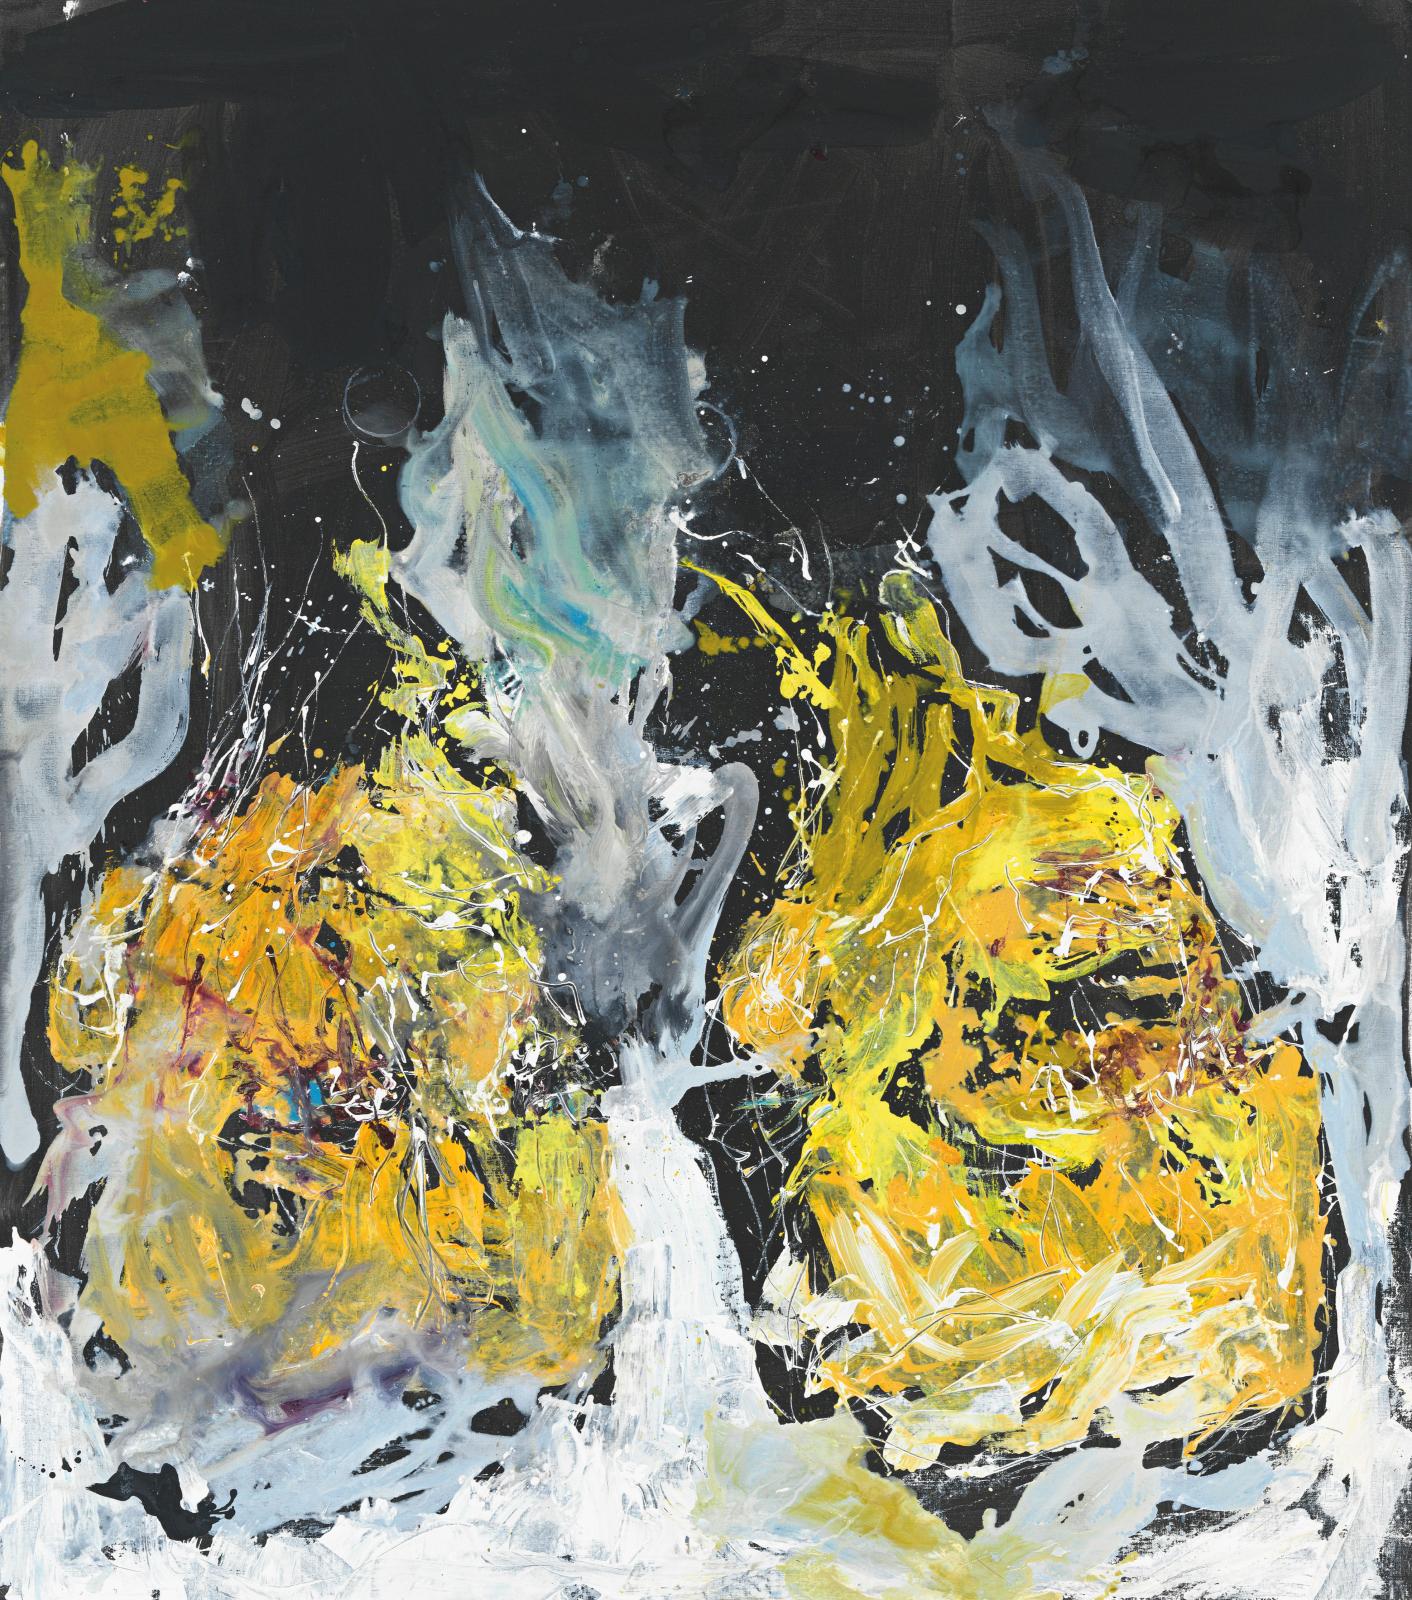 Georg Baselitz (né en 1938), EM gelb negativ, 2012, huile sur toile, 285 x 207 cm.